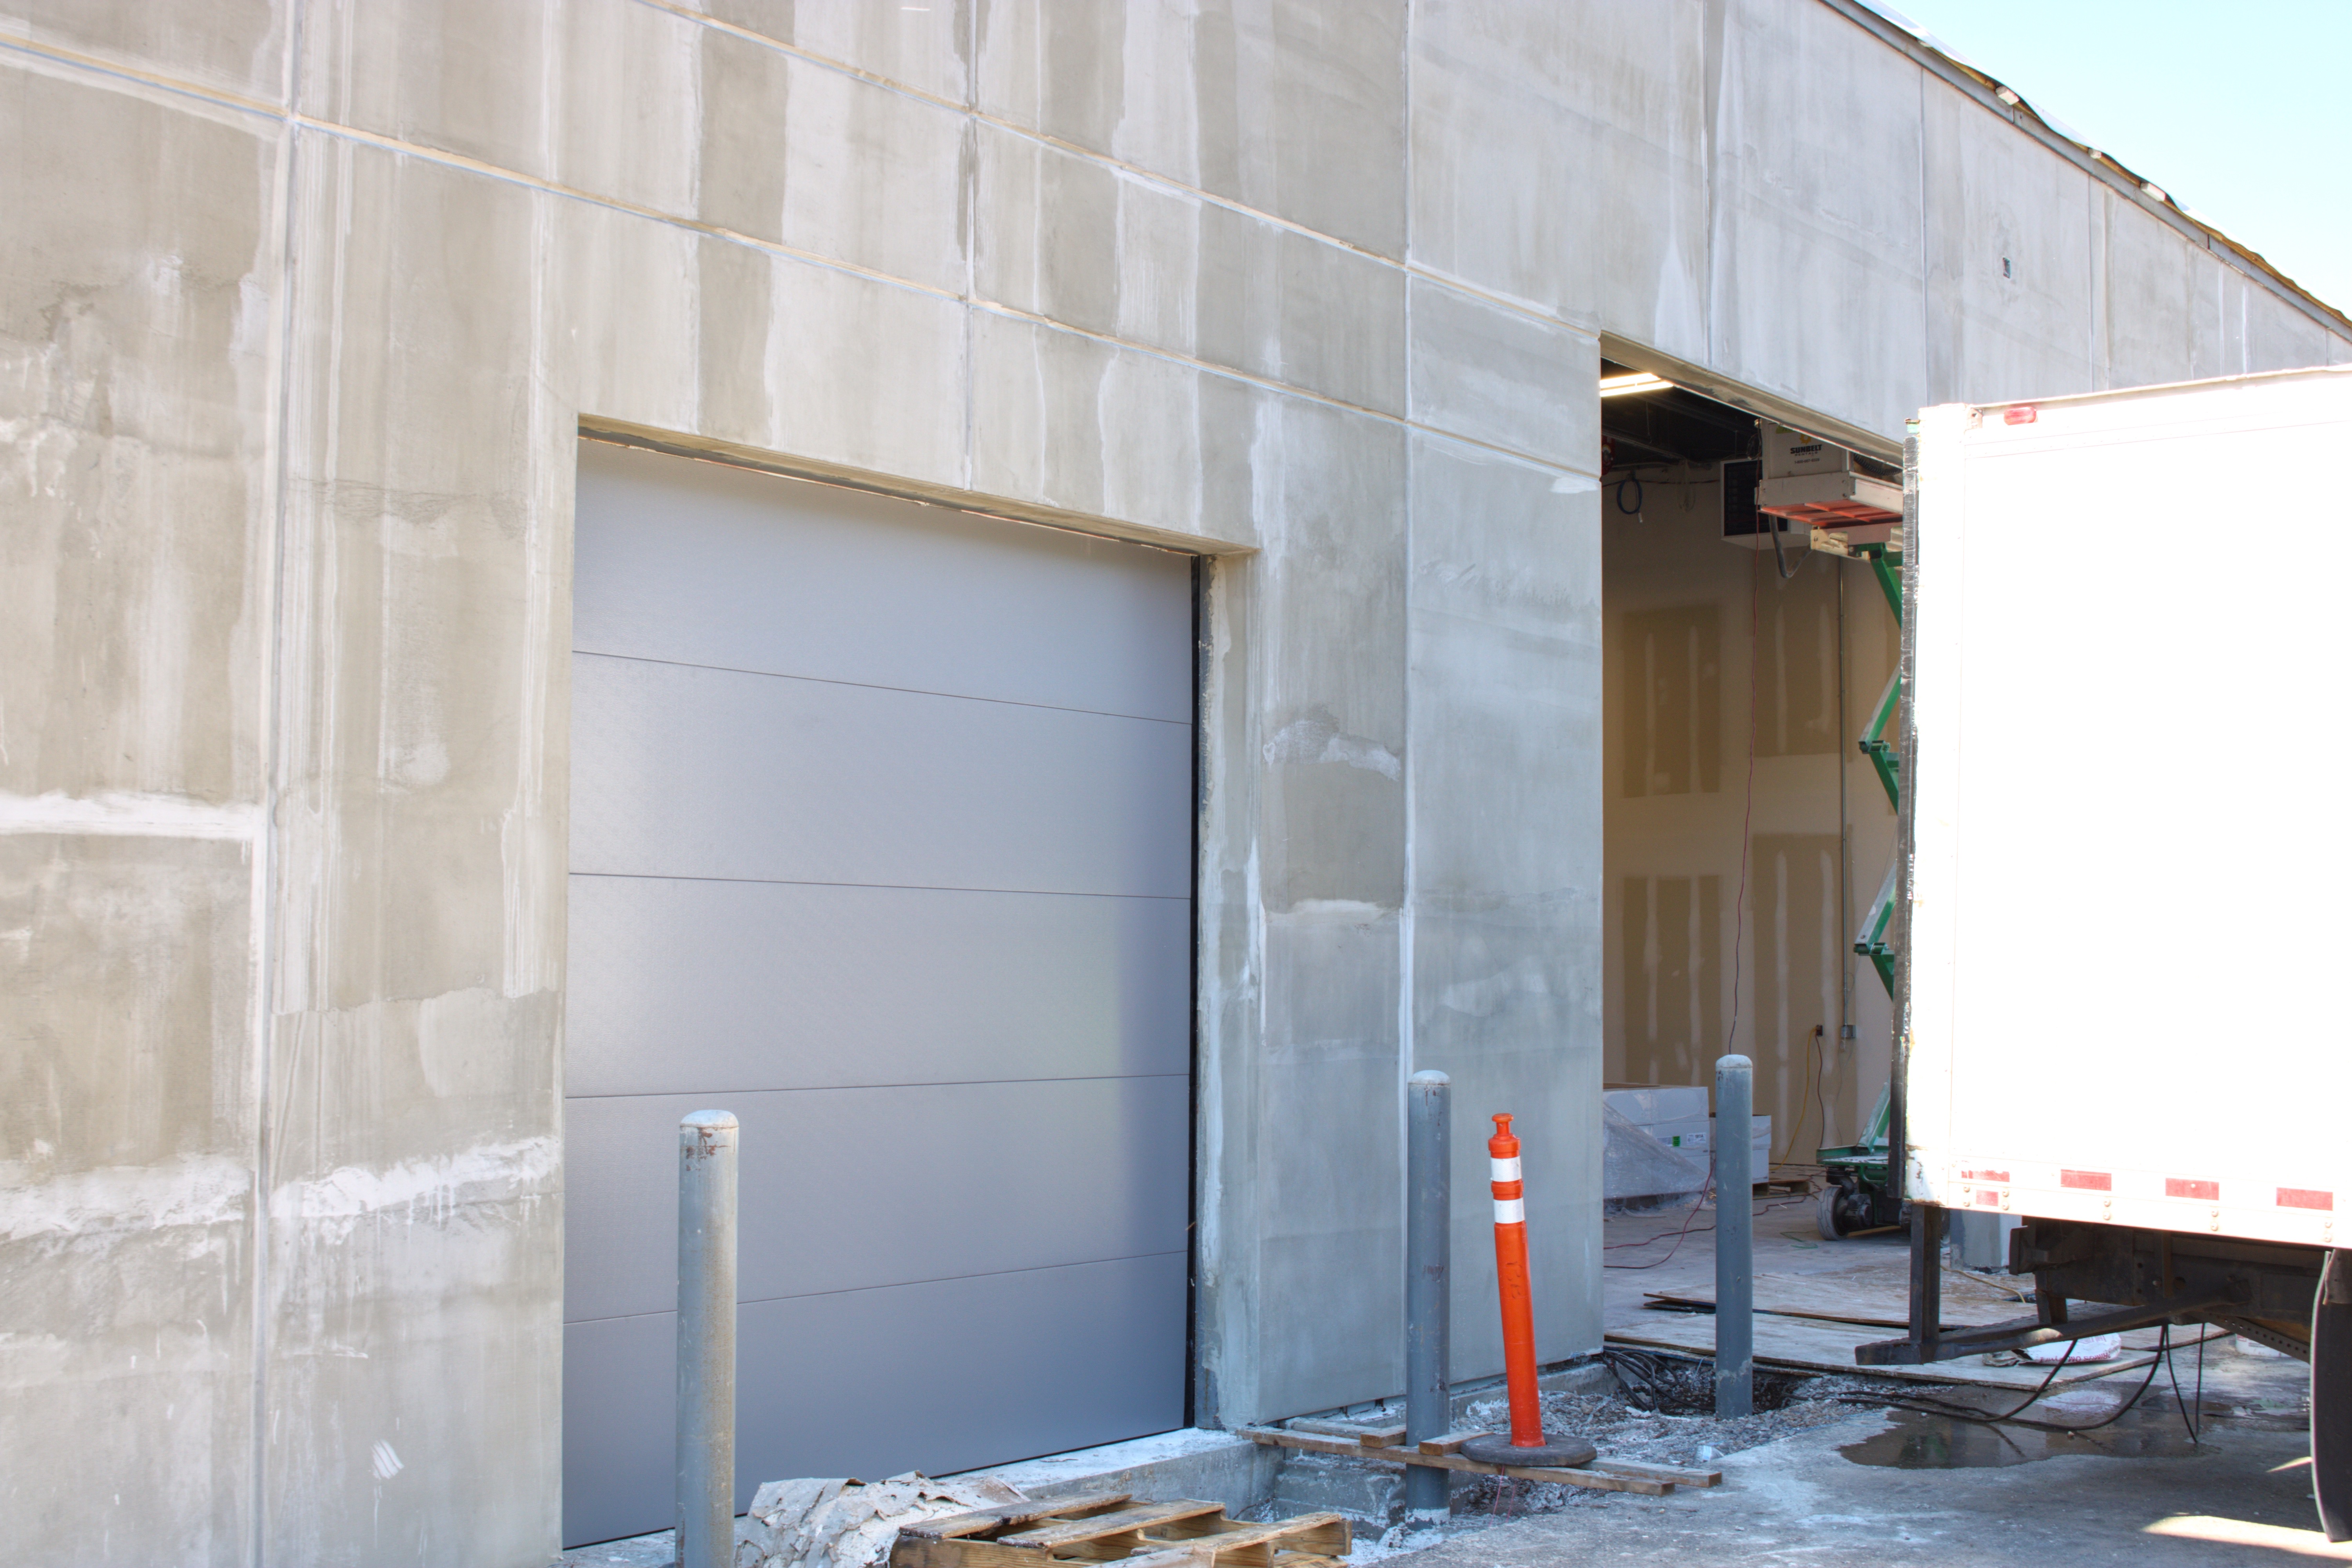 New-Doors-Being-Installed-in-FD-Garage-2